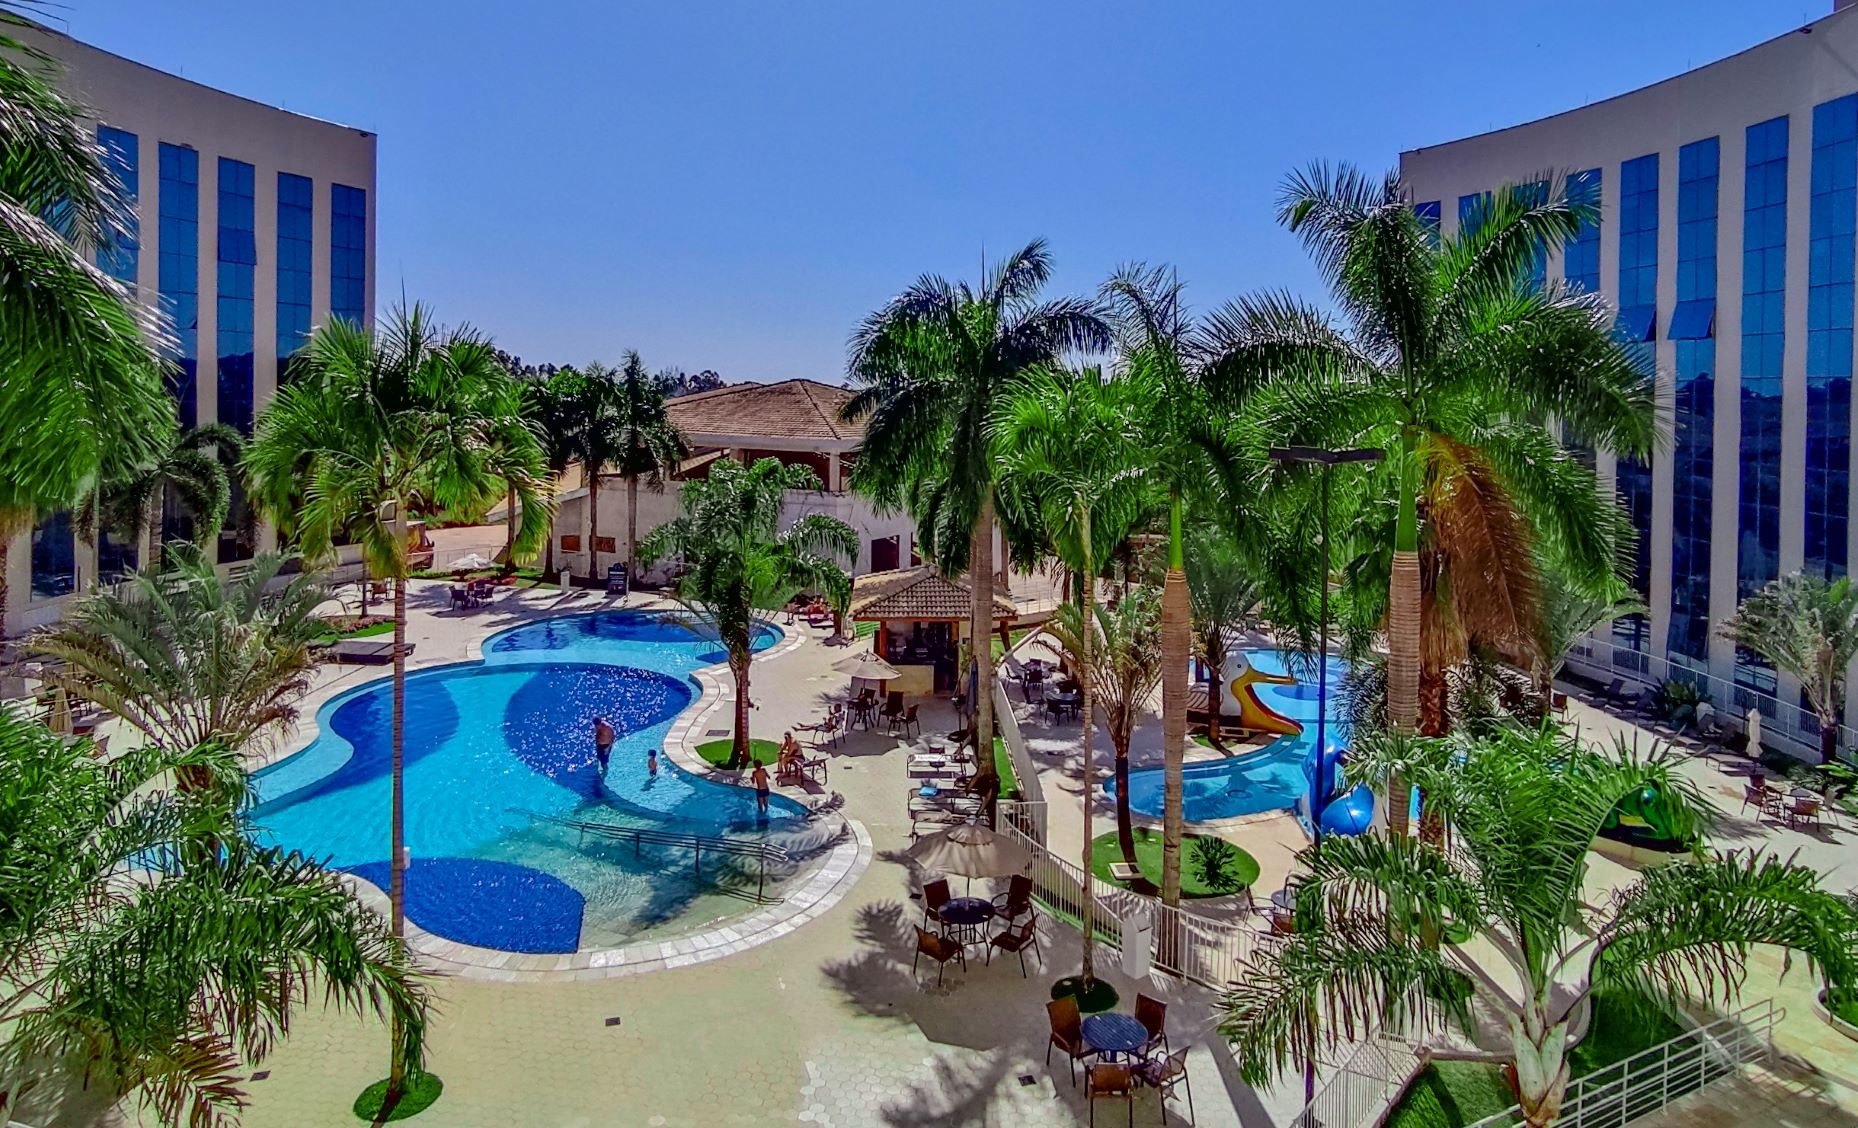 Barretos Park Hotel oferece pacotes de hospedagem com day use para parque aquático e show com Daniel Boaventura no feriado da Proclamação da República